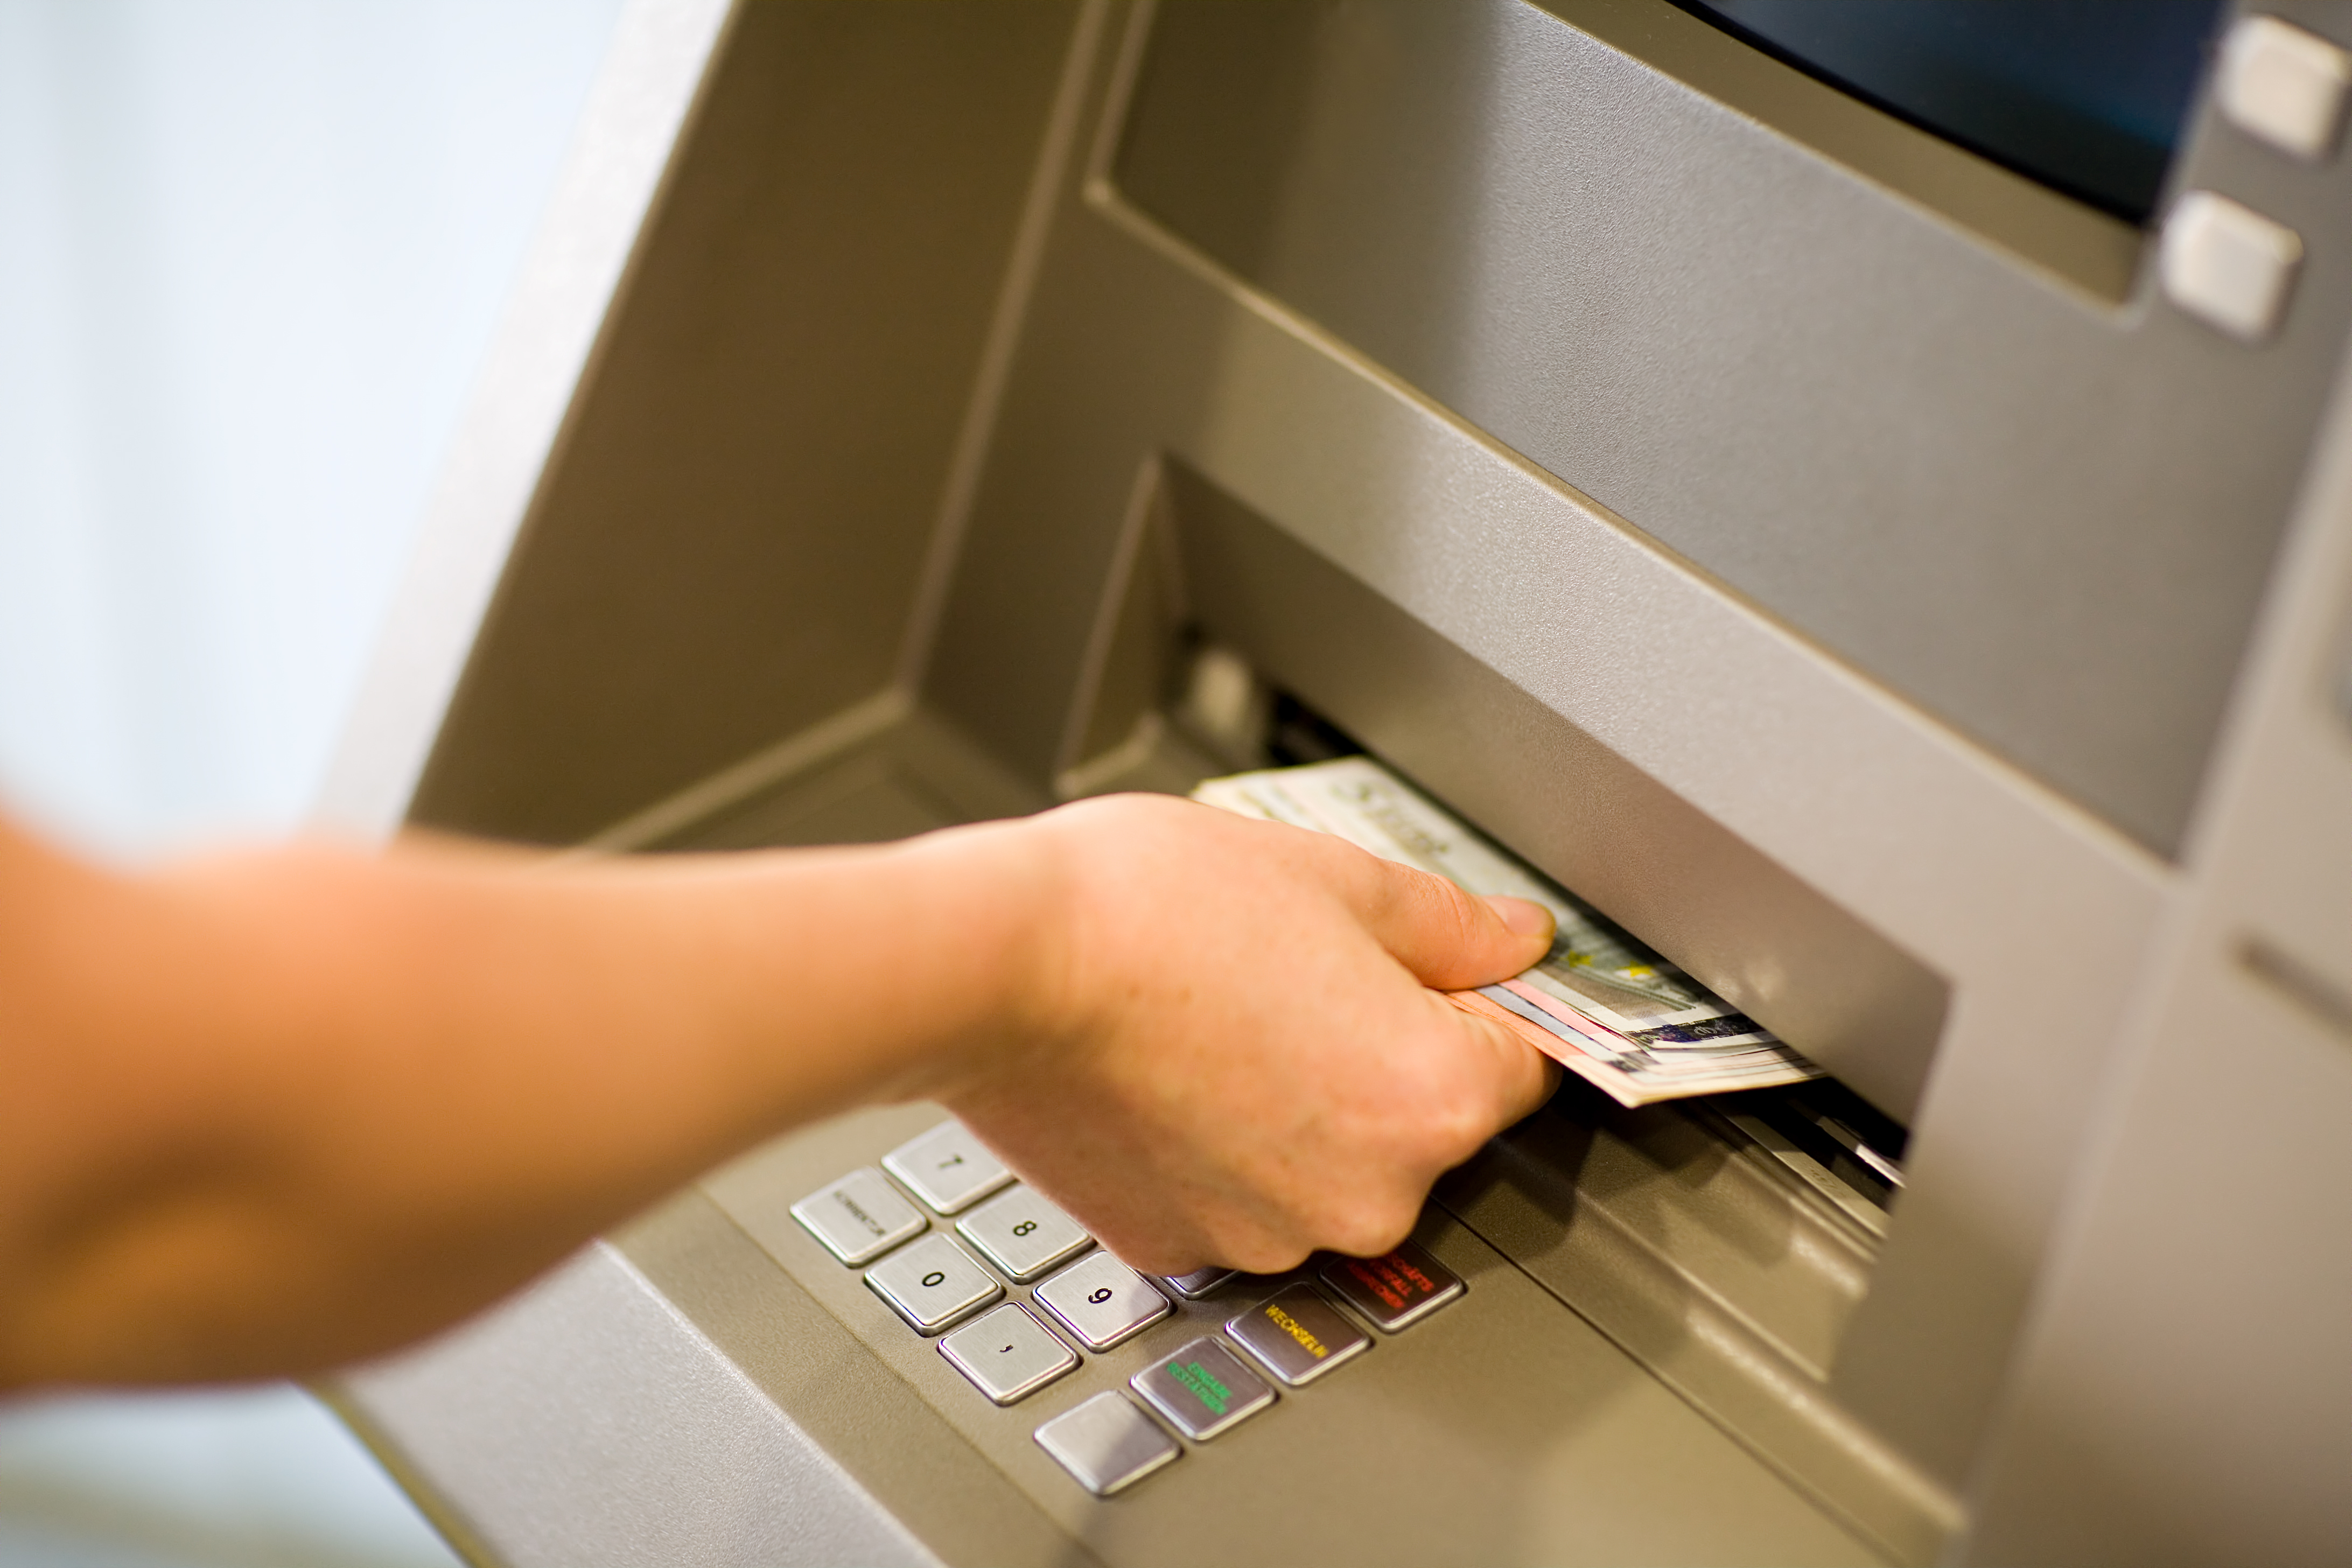 Une personne qui récupère de l'argent à un distributeur automatique. | Source : Shutterstock